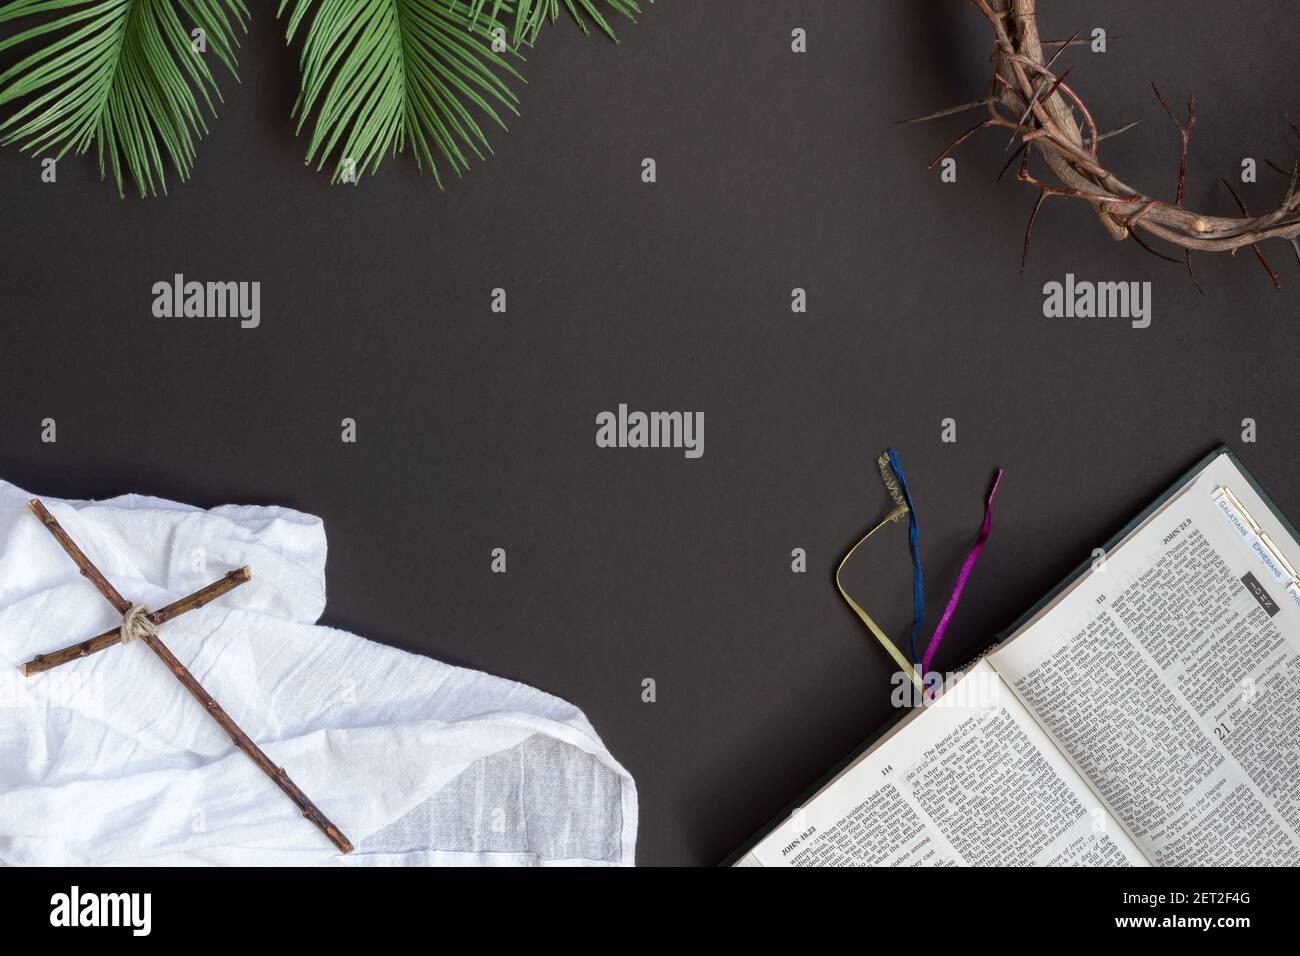 Cornice di bibbia aperta, corona di spine, foglie di palma e croce cristiana su sfondo nero con spazio copia Foto Stock